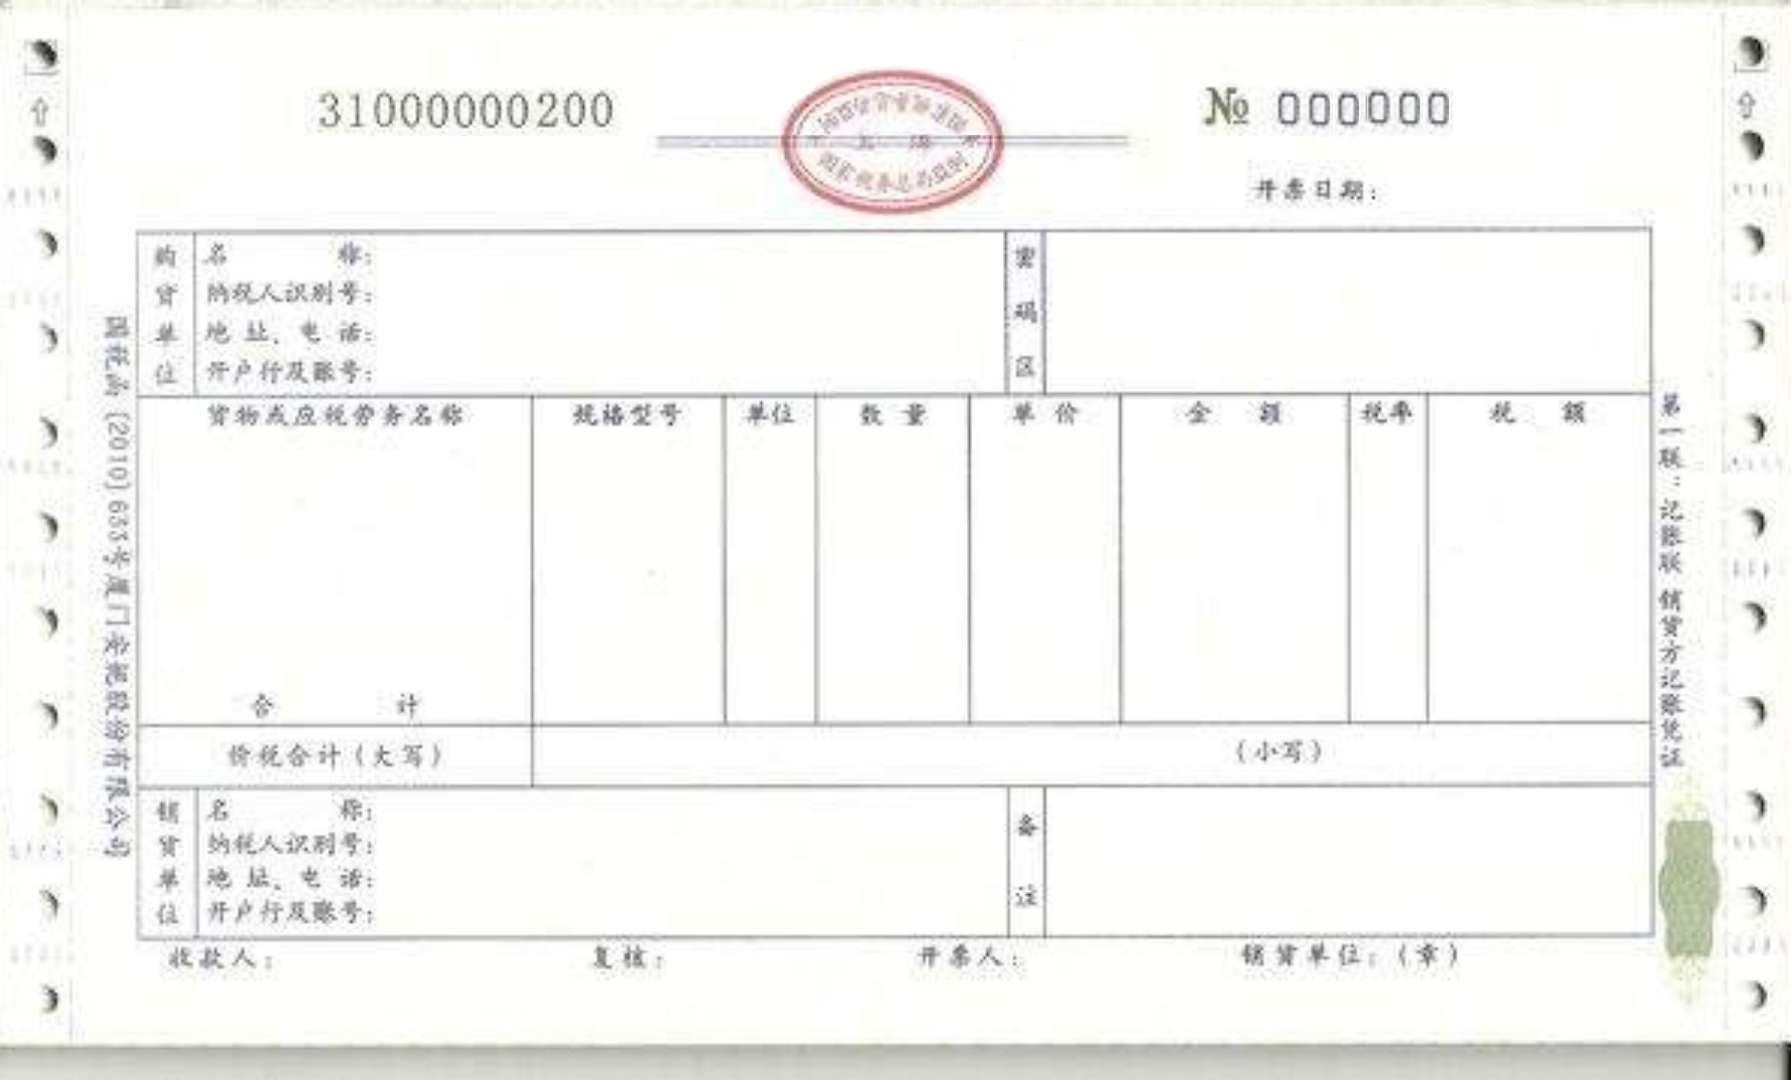 Chinese invoice 发票 main image